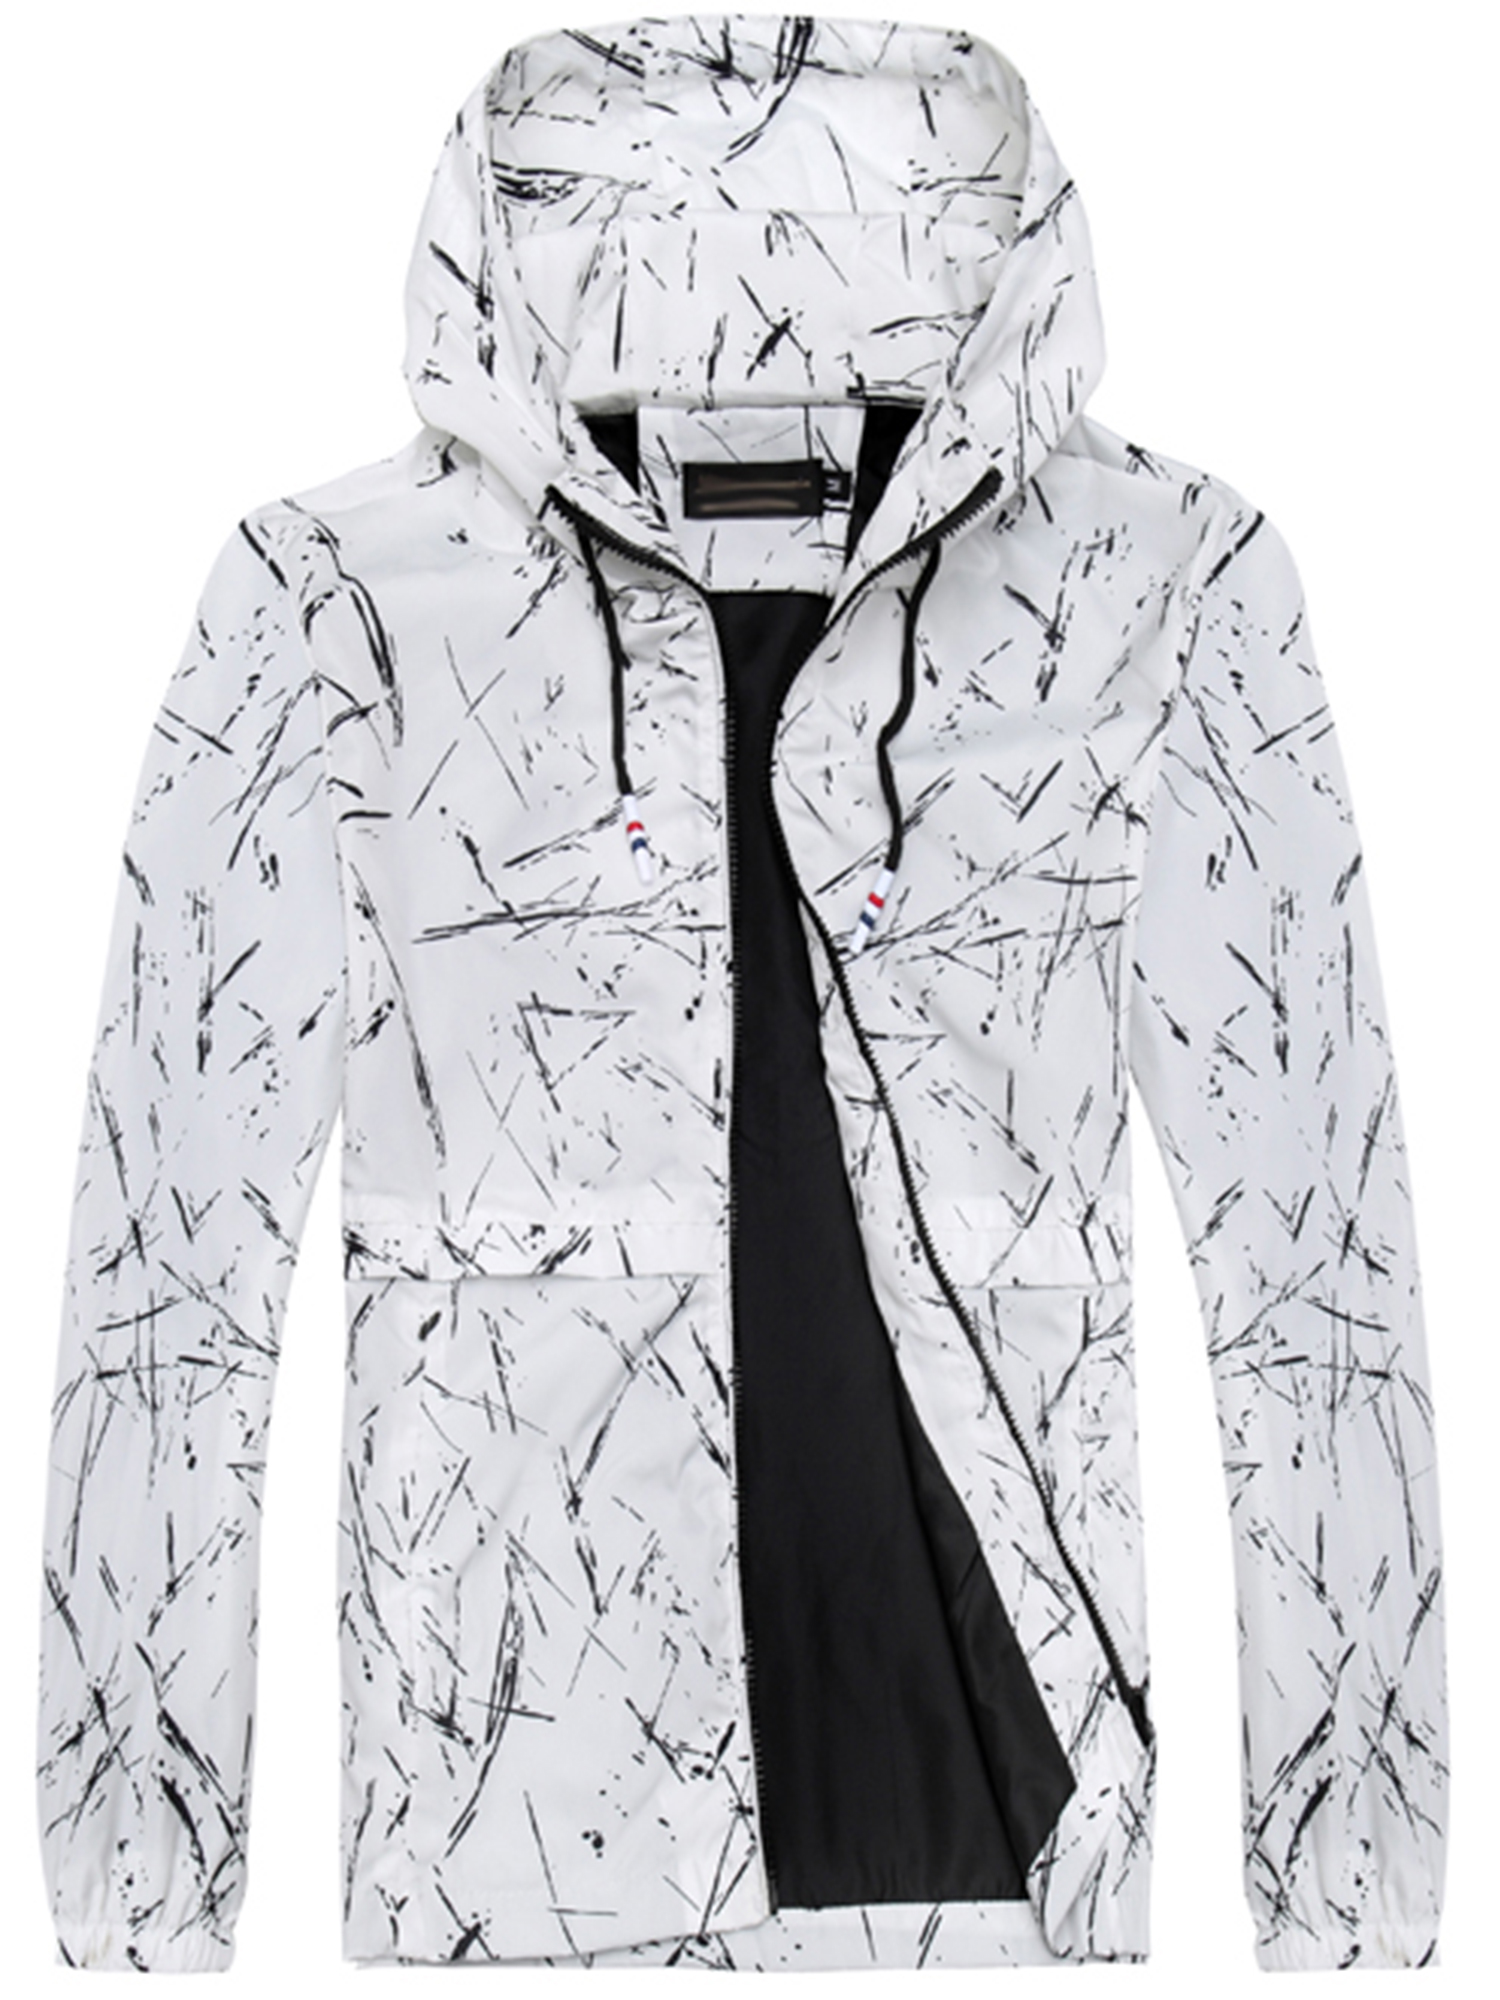 UKAP Men Hoodies Anorak Coat Jacket Zip Front Pocket Windbreaker Outdoor Sports Outwear Drawstring Up to Size 6XL Overcoat - image 1 of 3